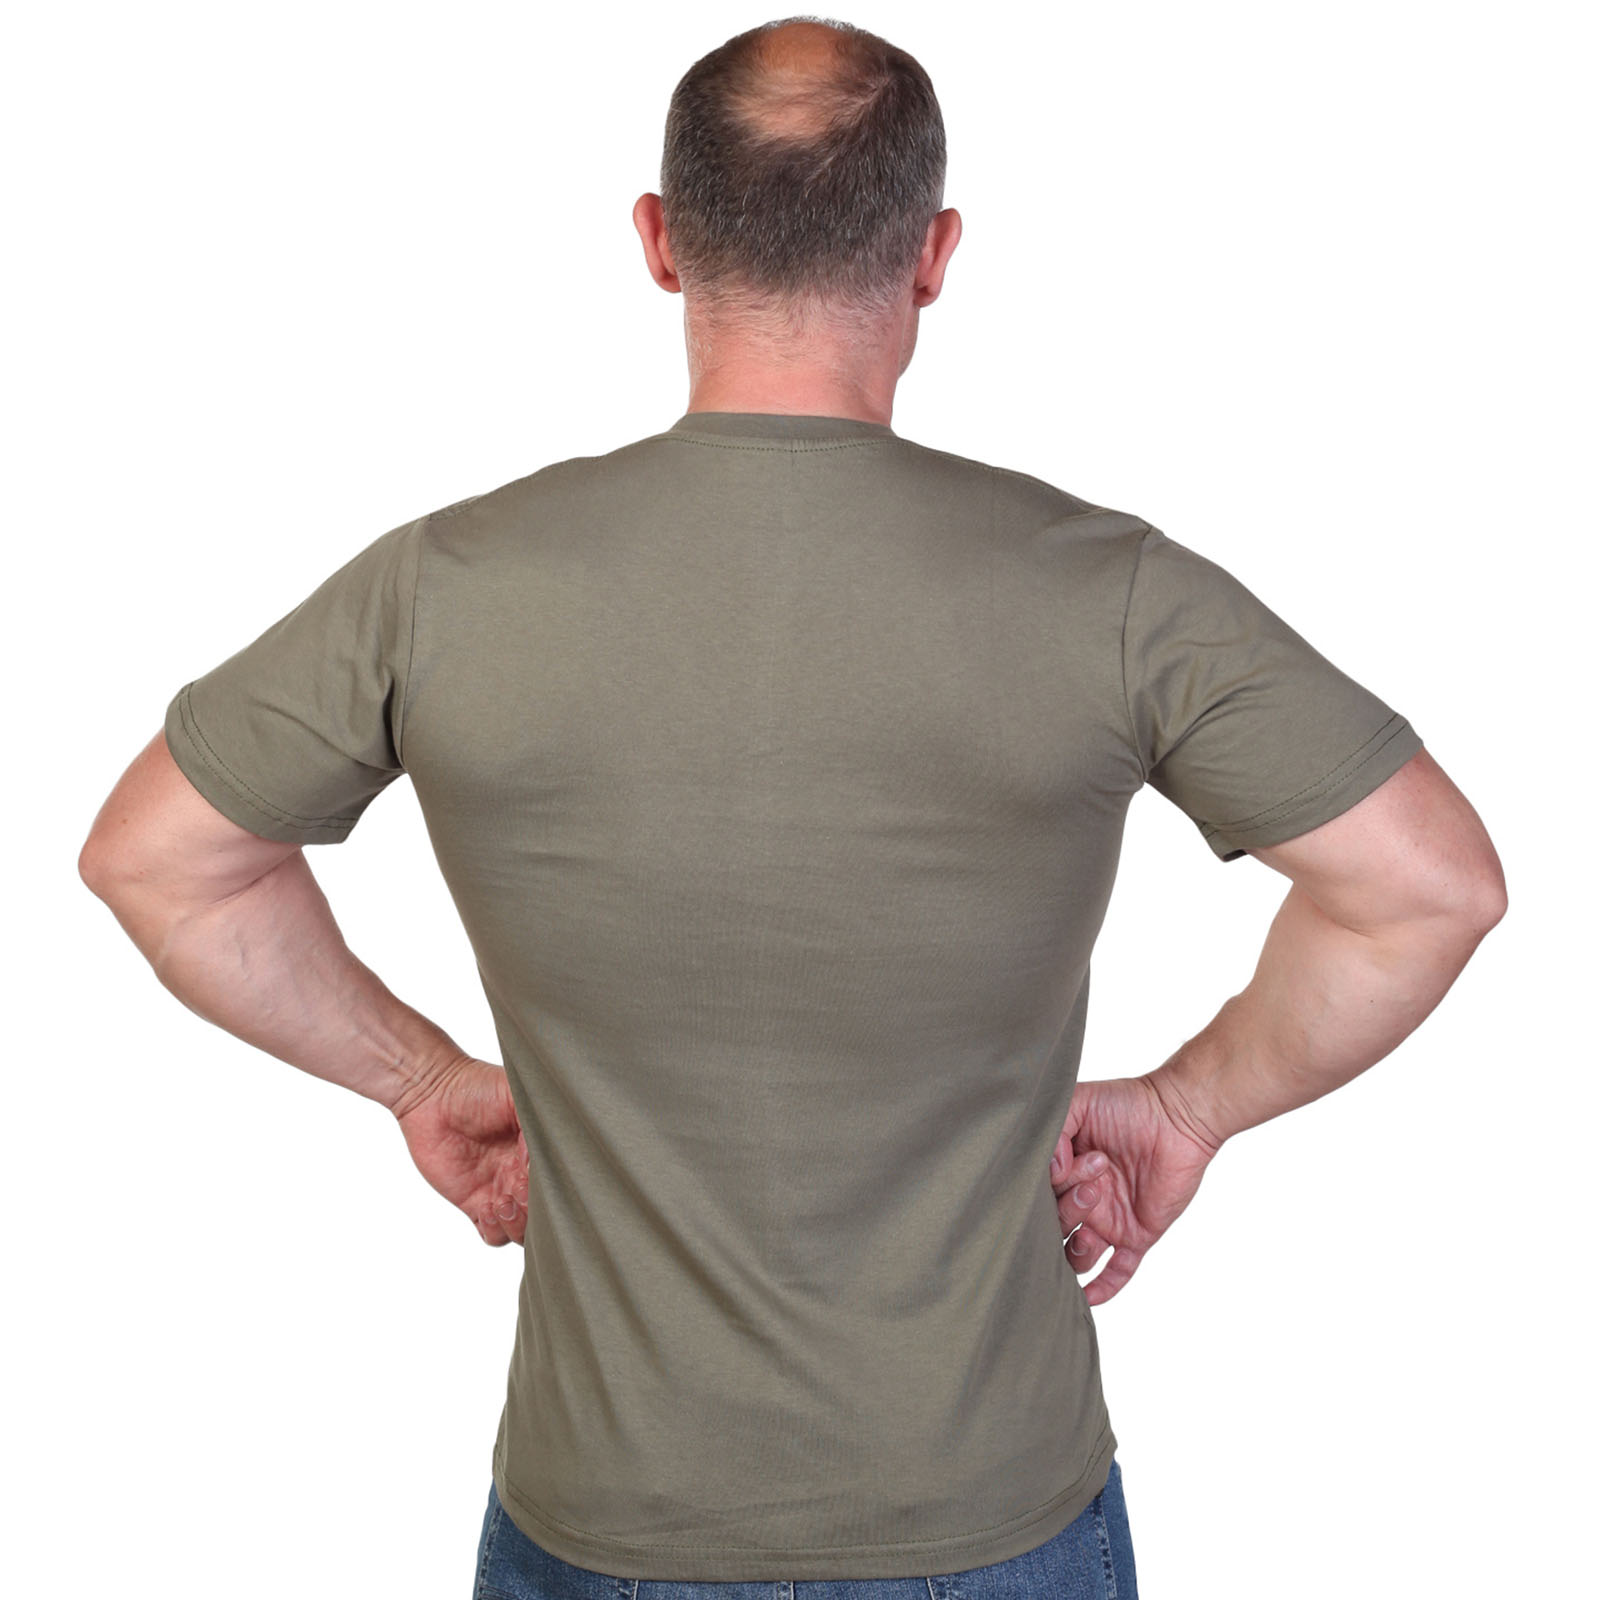 Оливковая футболка с термотрансфером "Воздушно-десантные войска" 